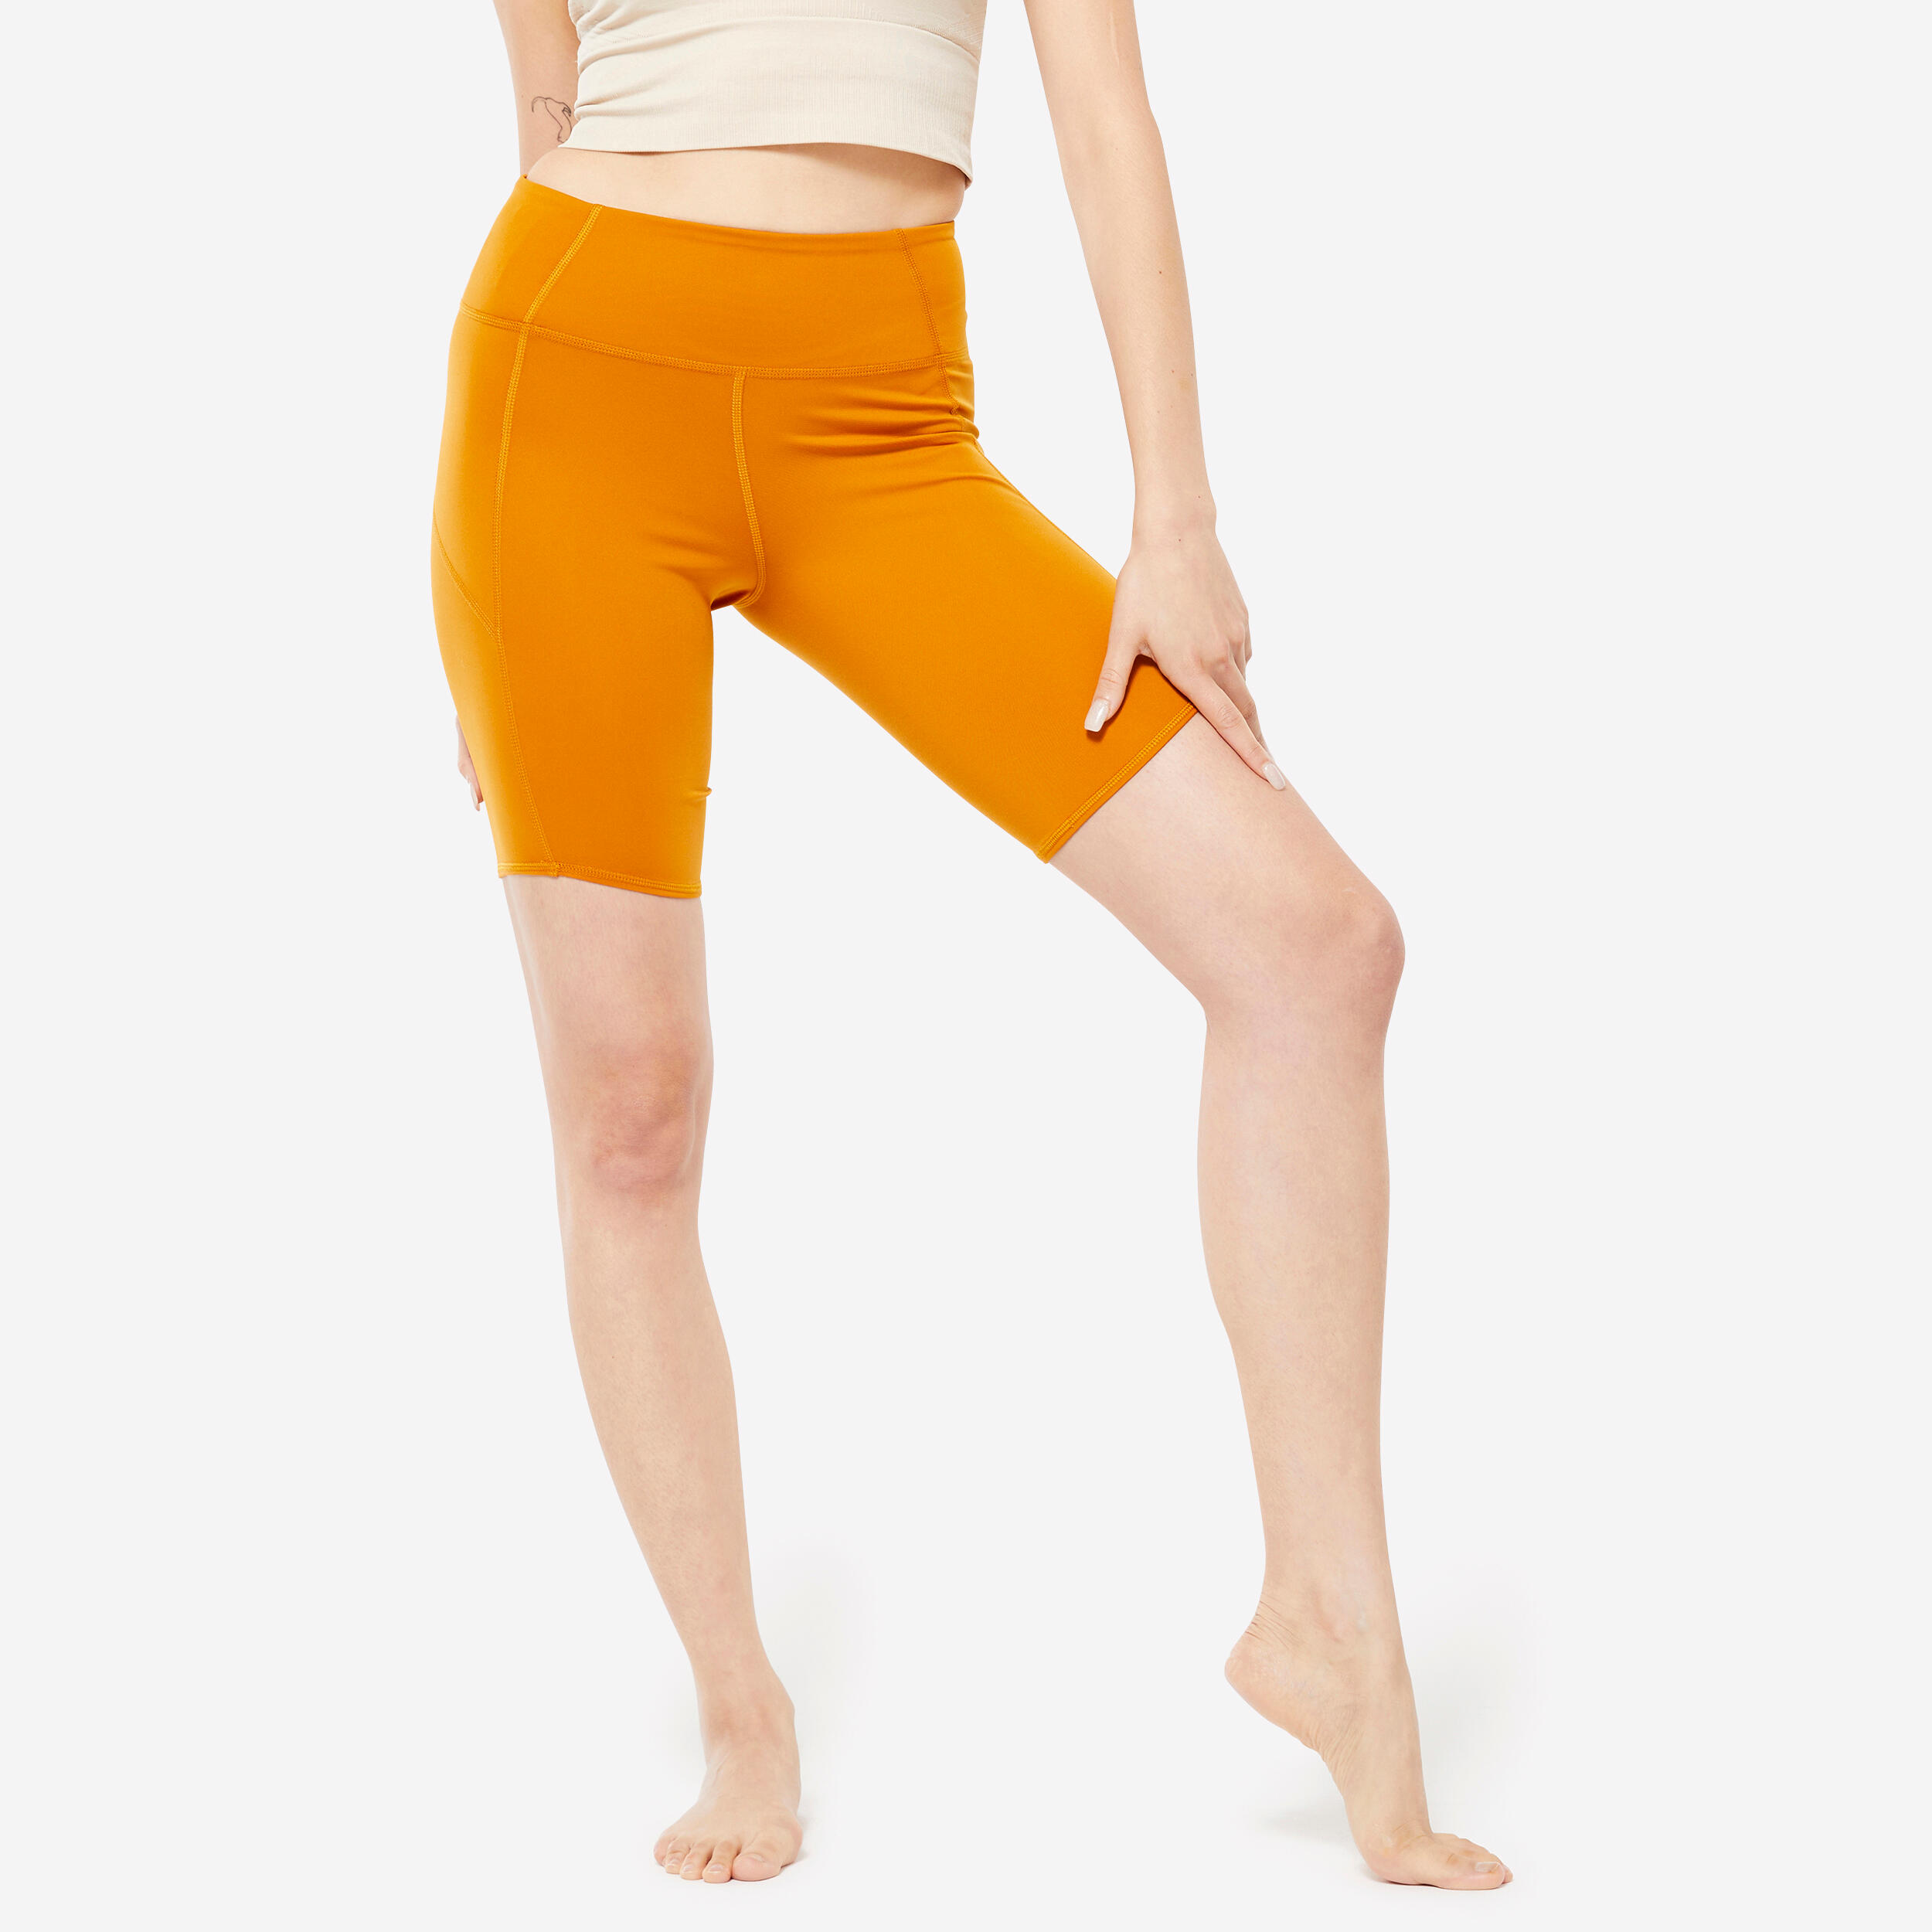 KIMJALY Women's Dynamic Yoga Bike Shorts - Ochre